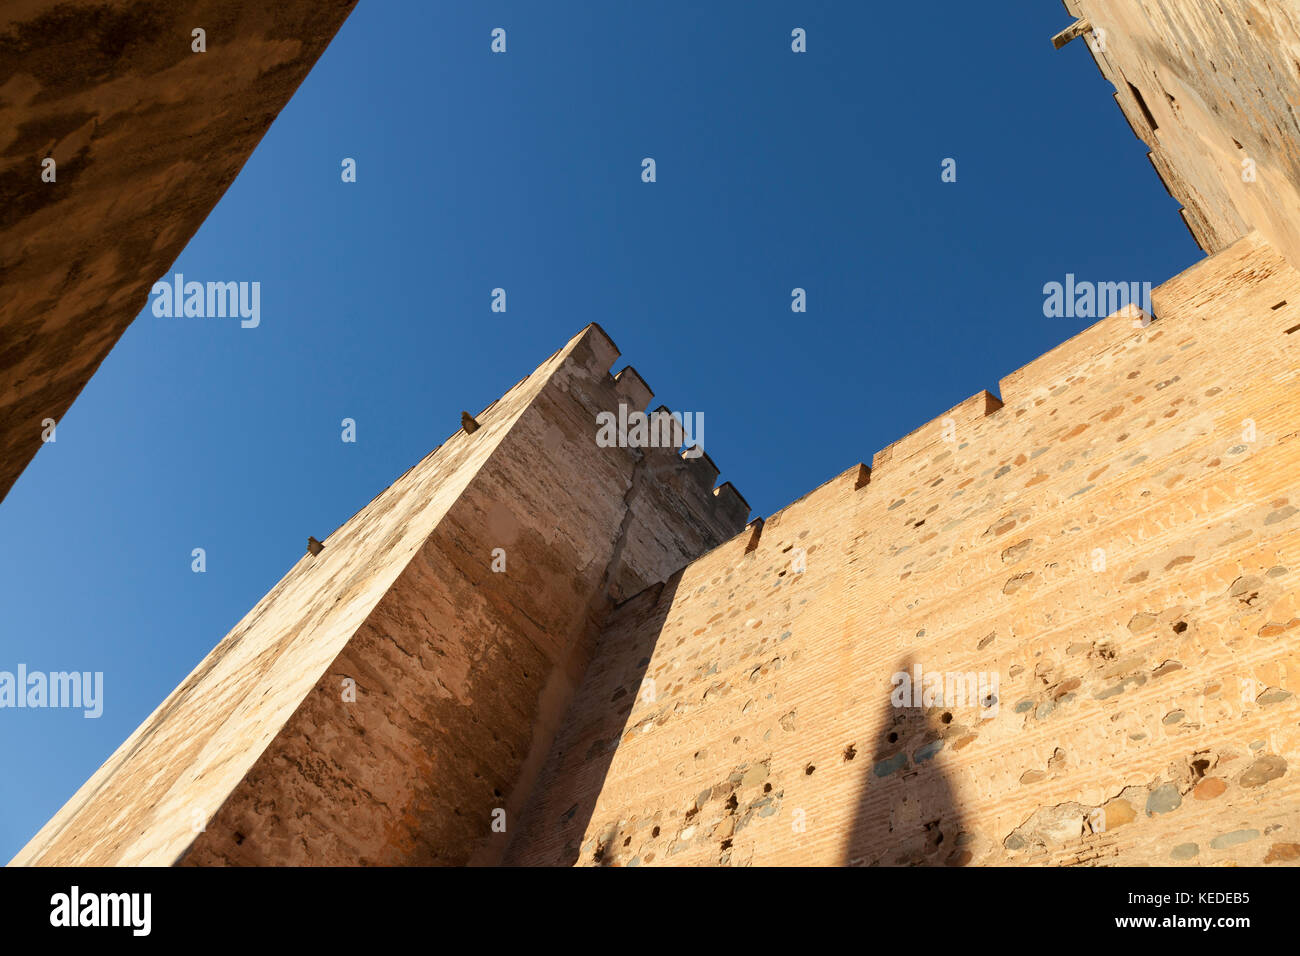 Granada, Spagna: il palazzo Alhambra e fortezza. plaza de armas alla alcazaba fortezza. Le due torri, la torre del homenaje e torre quebrada, serv Foto Stock